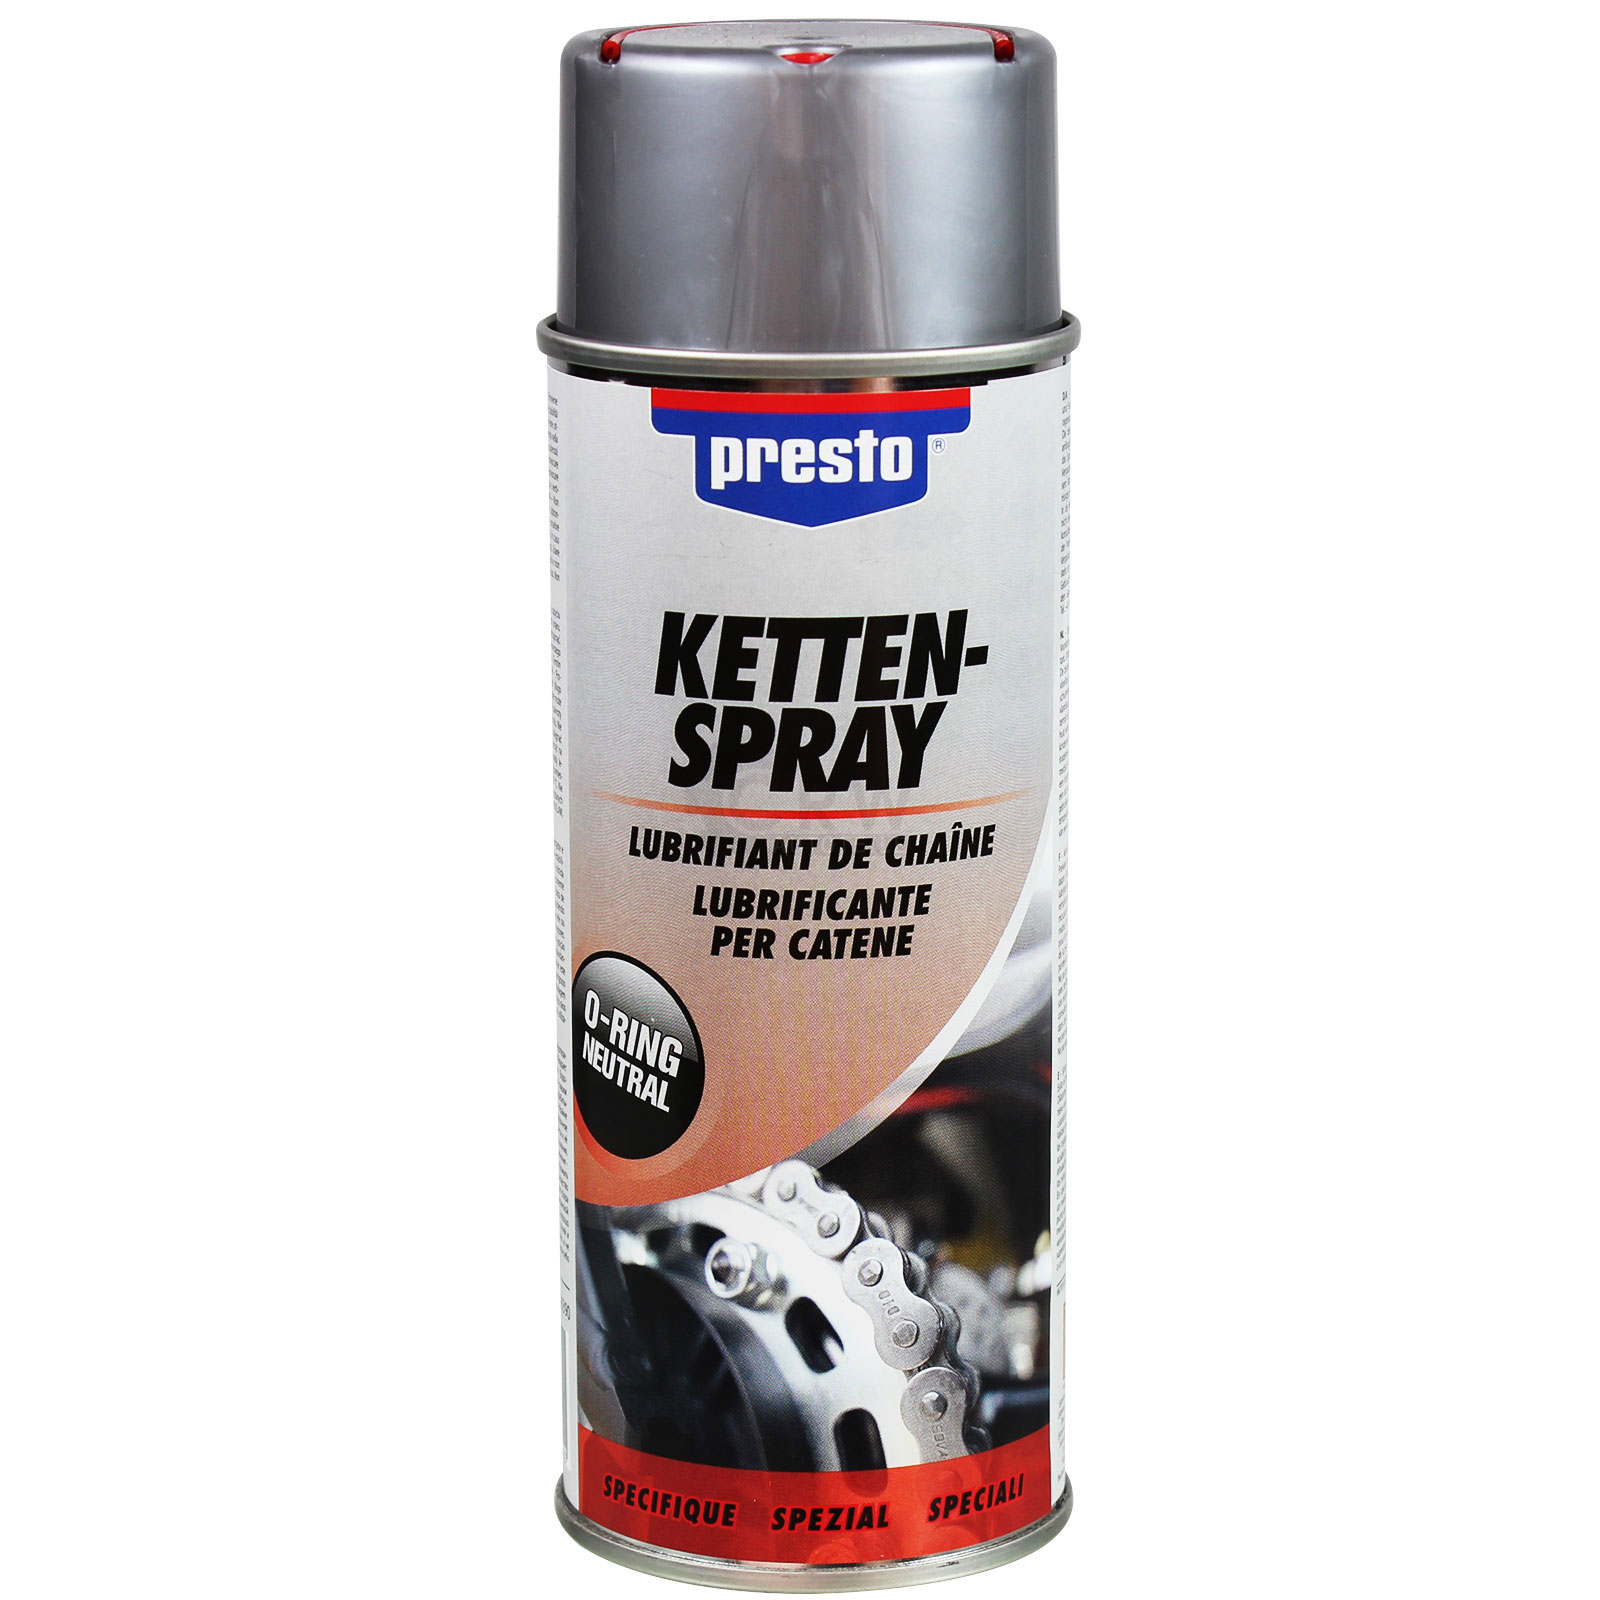 Presto Kettenspray Kettenfett Kettenpflege Sprühfett Spray 400ml